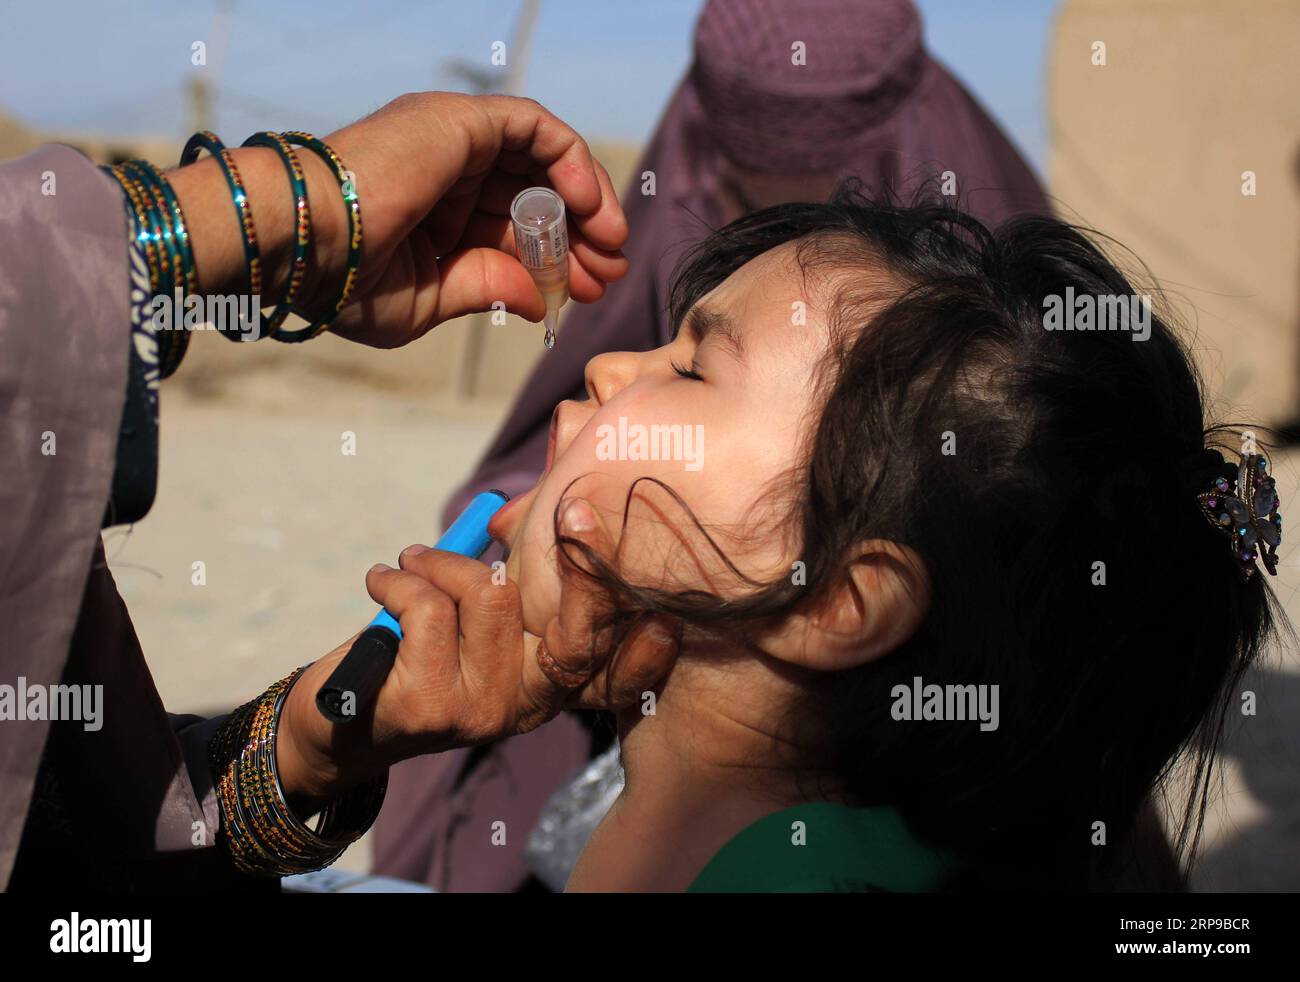 Nachrichten Themen der Woche KW14 Nachrichten Bilder des Tages 190401 -- KANDAHAR, 1. April 2019 -- Ein Gesundheitsfachmann gibt einem Kind Polioimpfung während einer Impfkampagne in Kandahar, Südafghanistan, 1. April 2019. Ein zwei Jahre altes Kind wurde Berichten zufolge von Polioviren betroffen, obwohl es in Afghanistans südlicher Provinz Uruzgan eine Polioimpfung erhalten hatte, sagte ein lokaler Beamter am Montag. Die anhaltenden Aufstände und Konflikte behindern die Bemühungen, die Infektionskrankheit im Bergland zu bekämpfen. AFGHANISTAN-KANDAHAR-POLIO-KAMPAGNE SanaullahxSeaim PUBLICATIONx Stockfoto